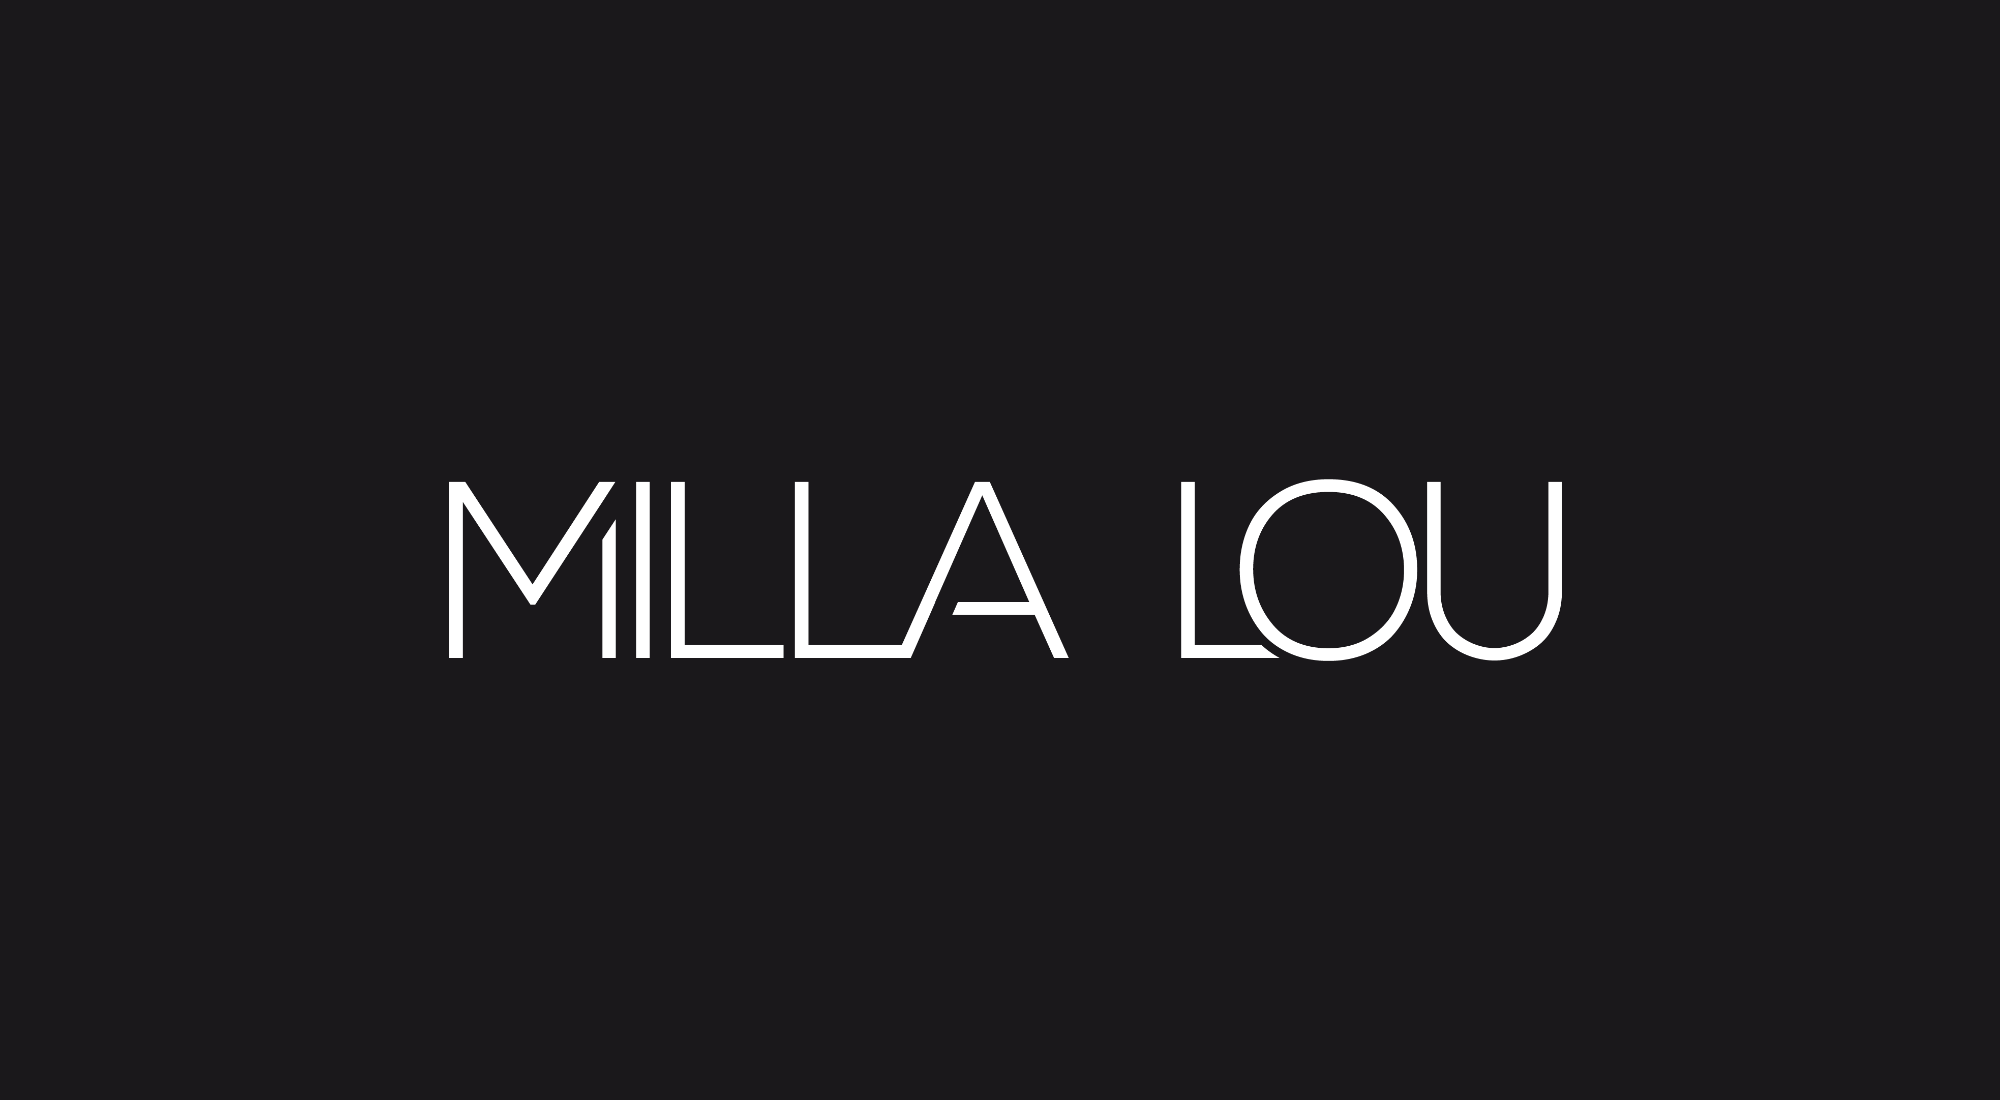 Milla Lou